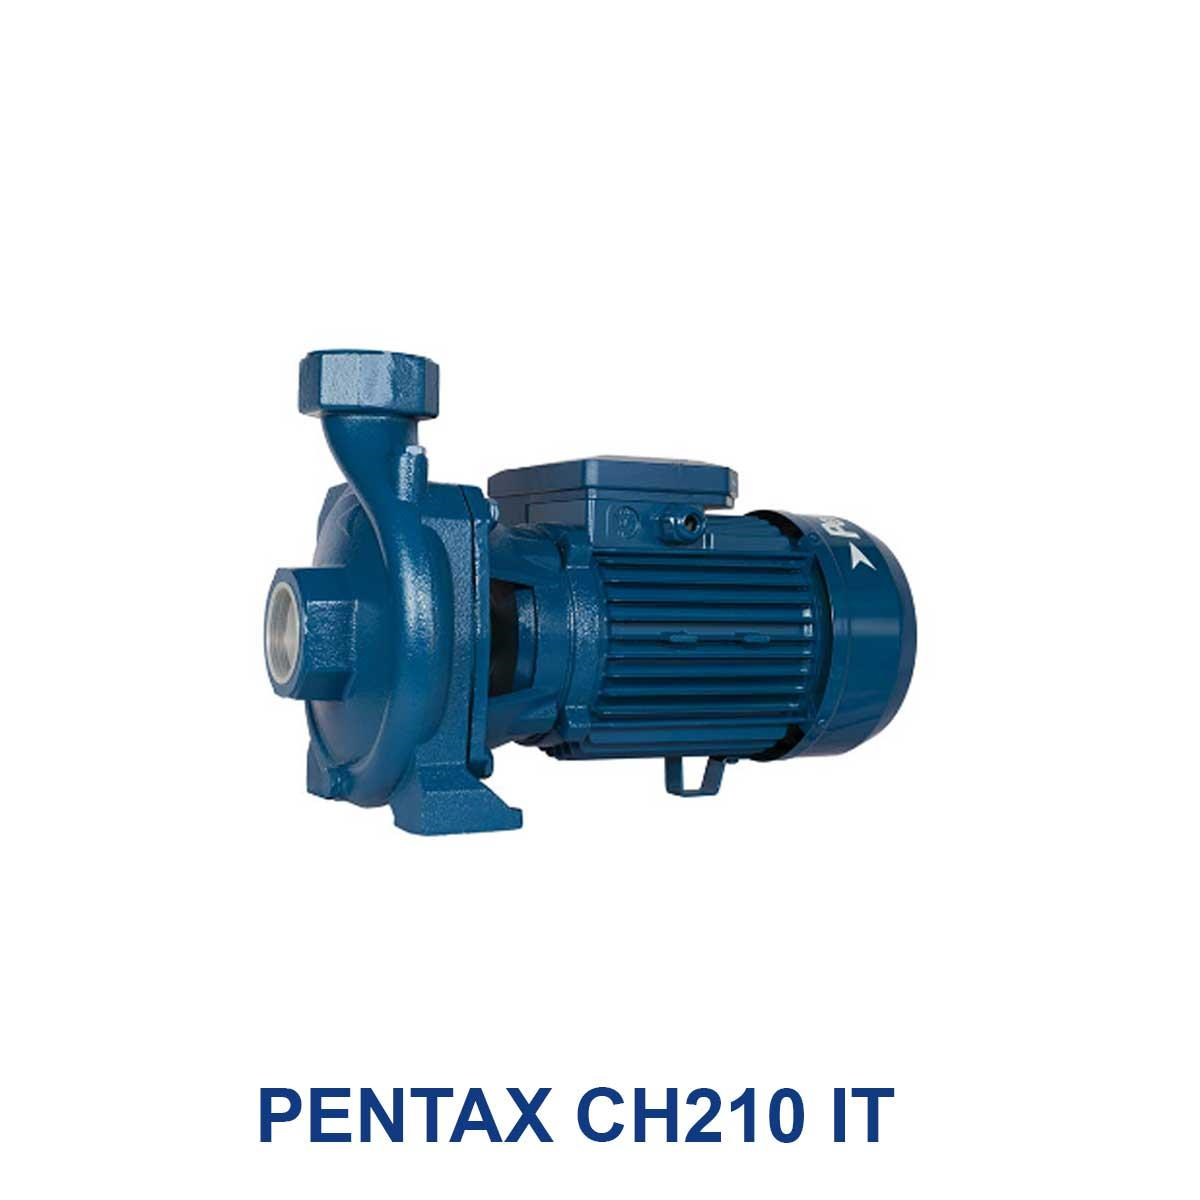 PENTAX-CH210-IT